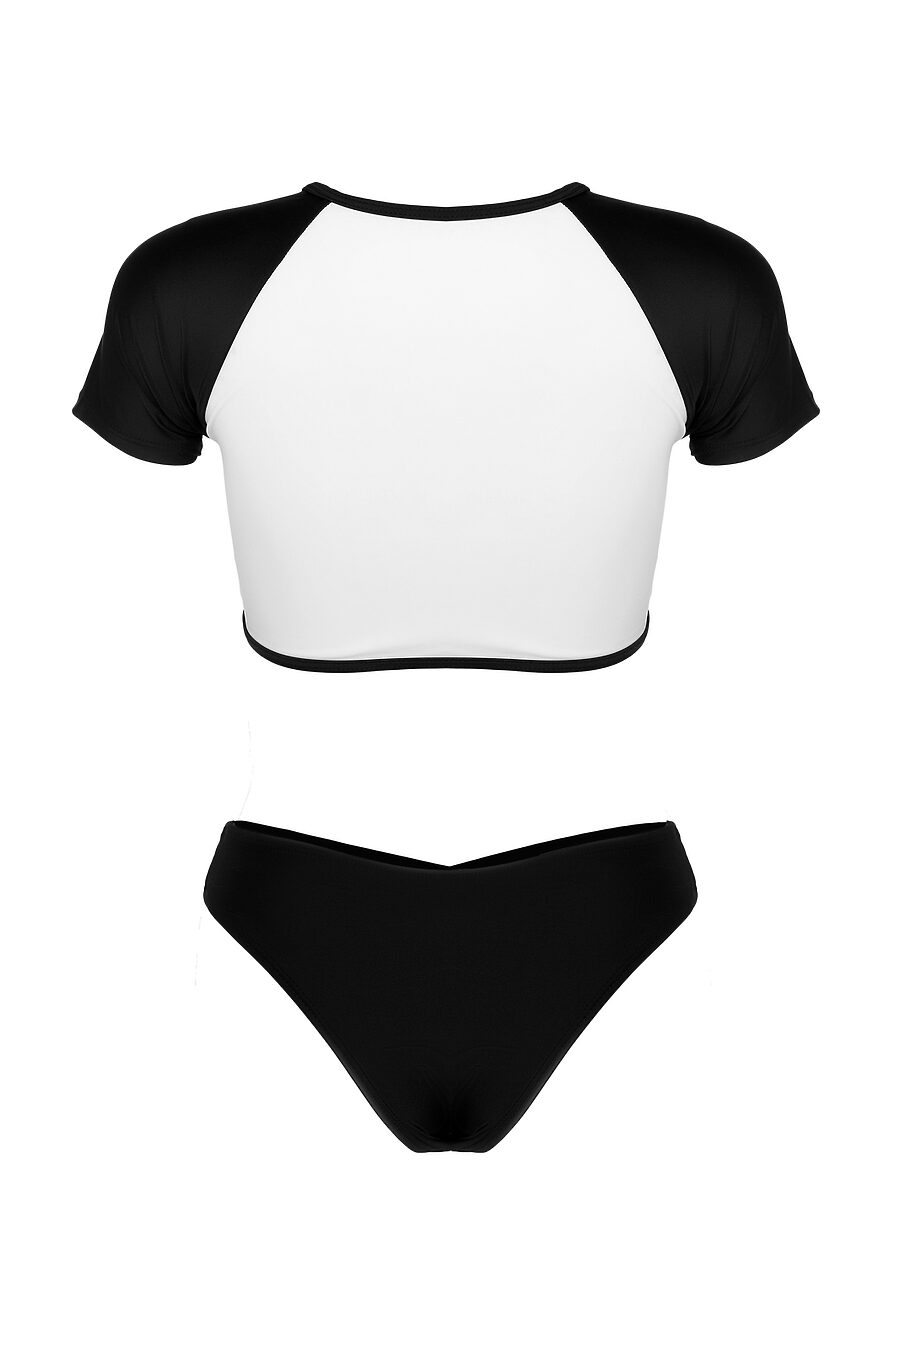 Купальник женский раздельный с топом сексуальный черно-белый купальник с плавками-бразильяна "Габри" Nothing But Love (807185), купить в Moyo.moda